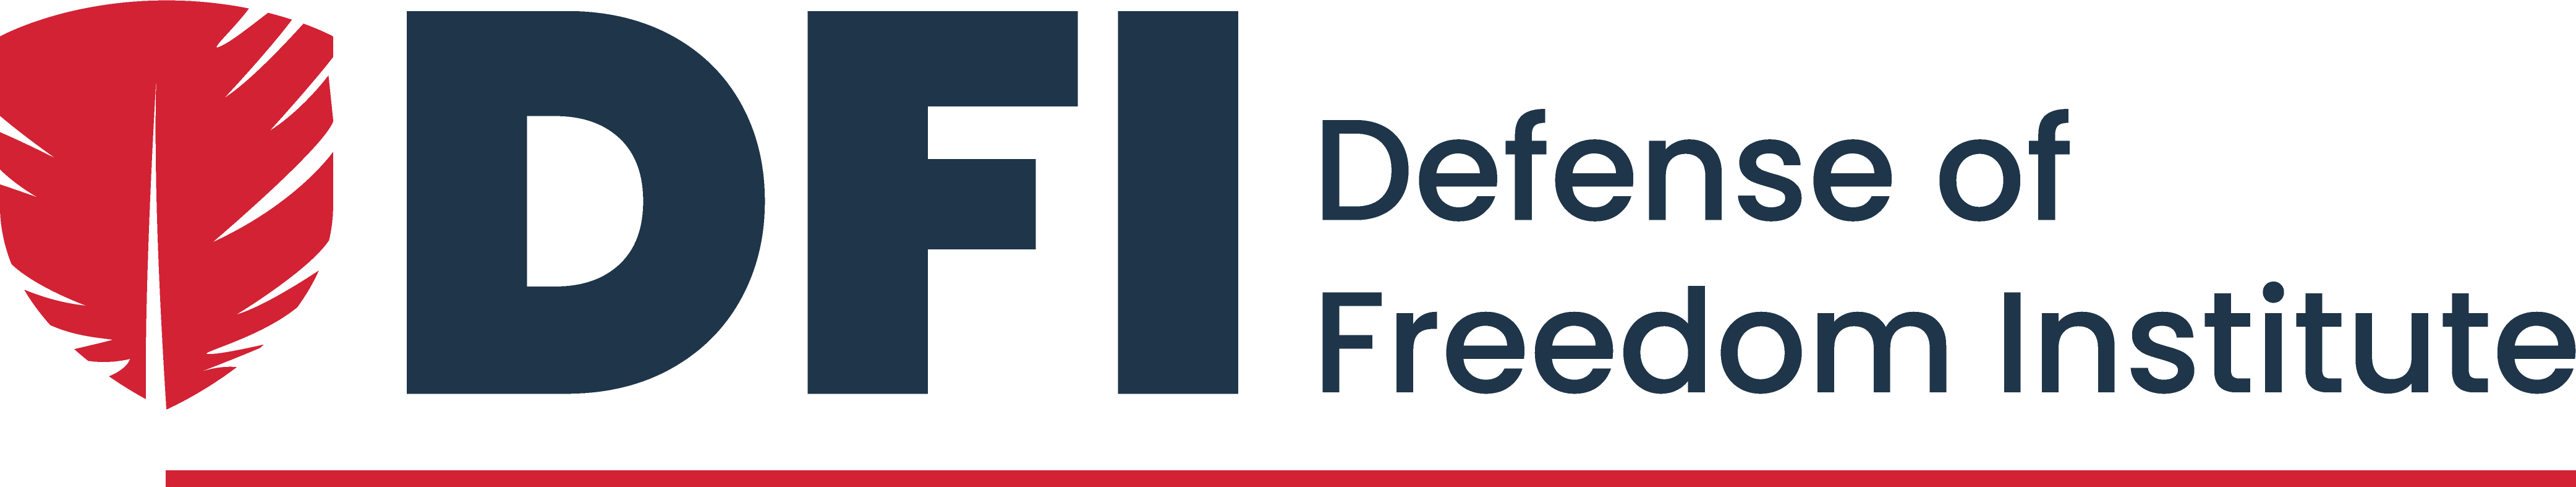 defense of freedom institute logo